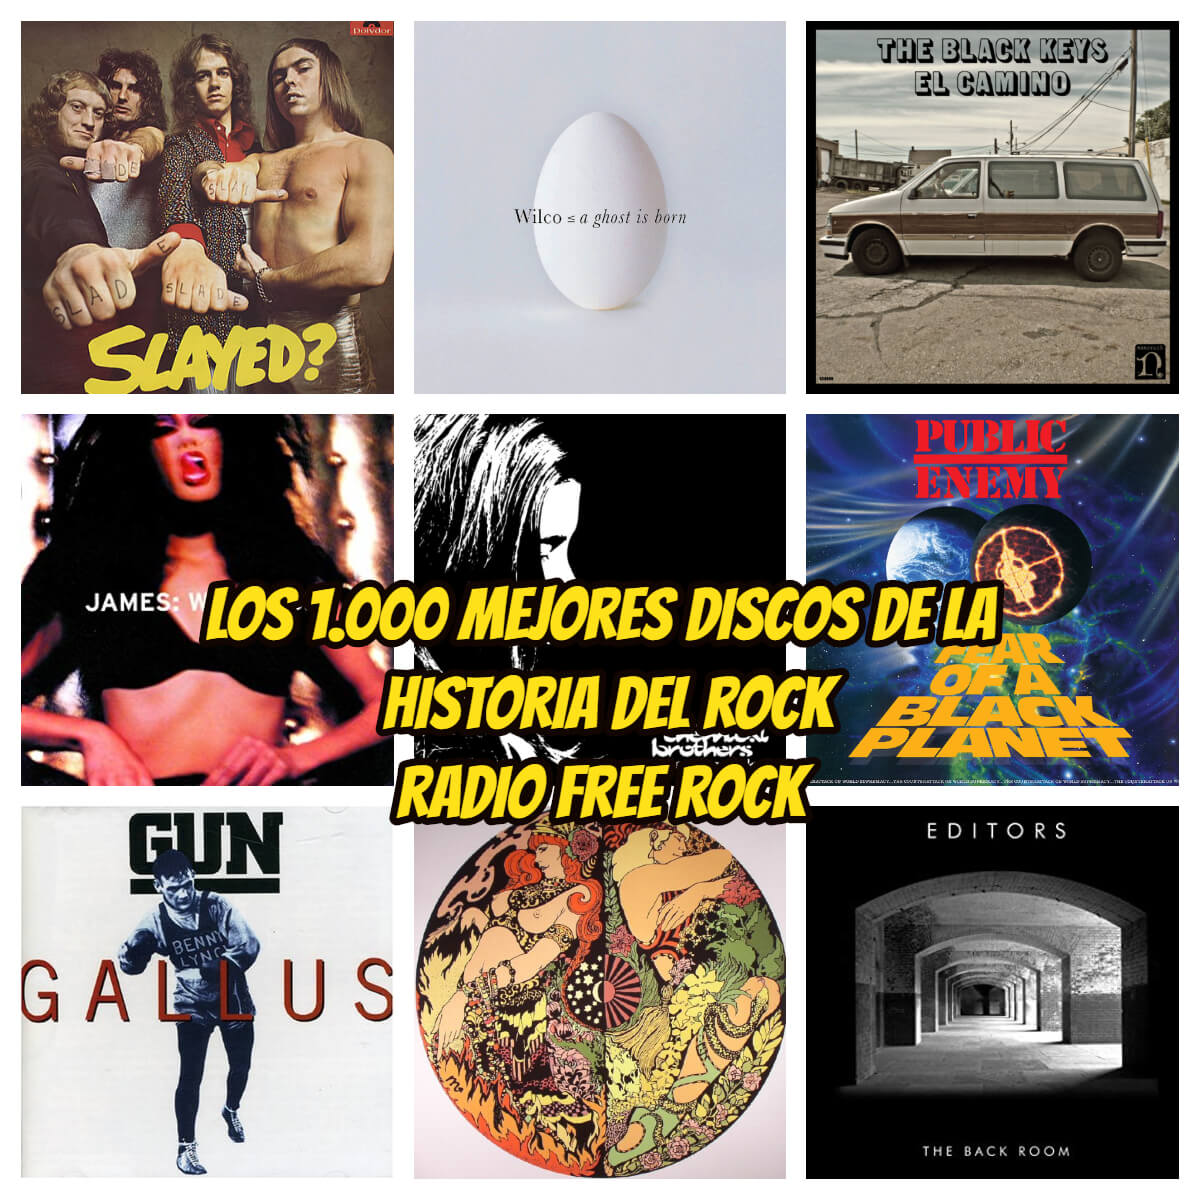 1000-mejores-discos-de-la-historia-del-rock-7-la-gran-travesia-radio-free-rock